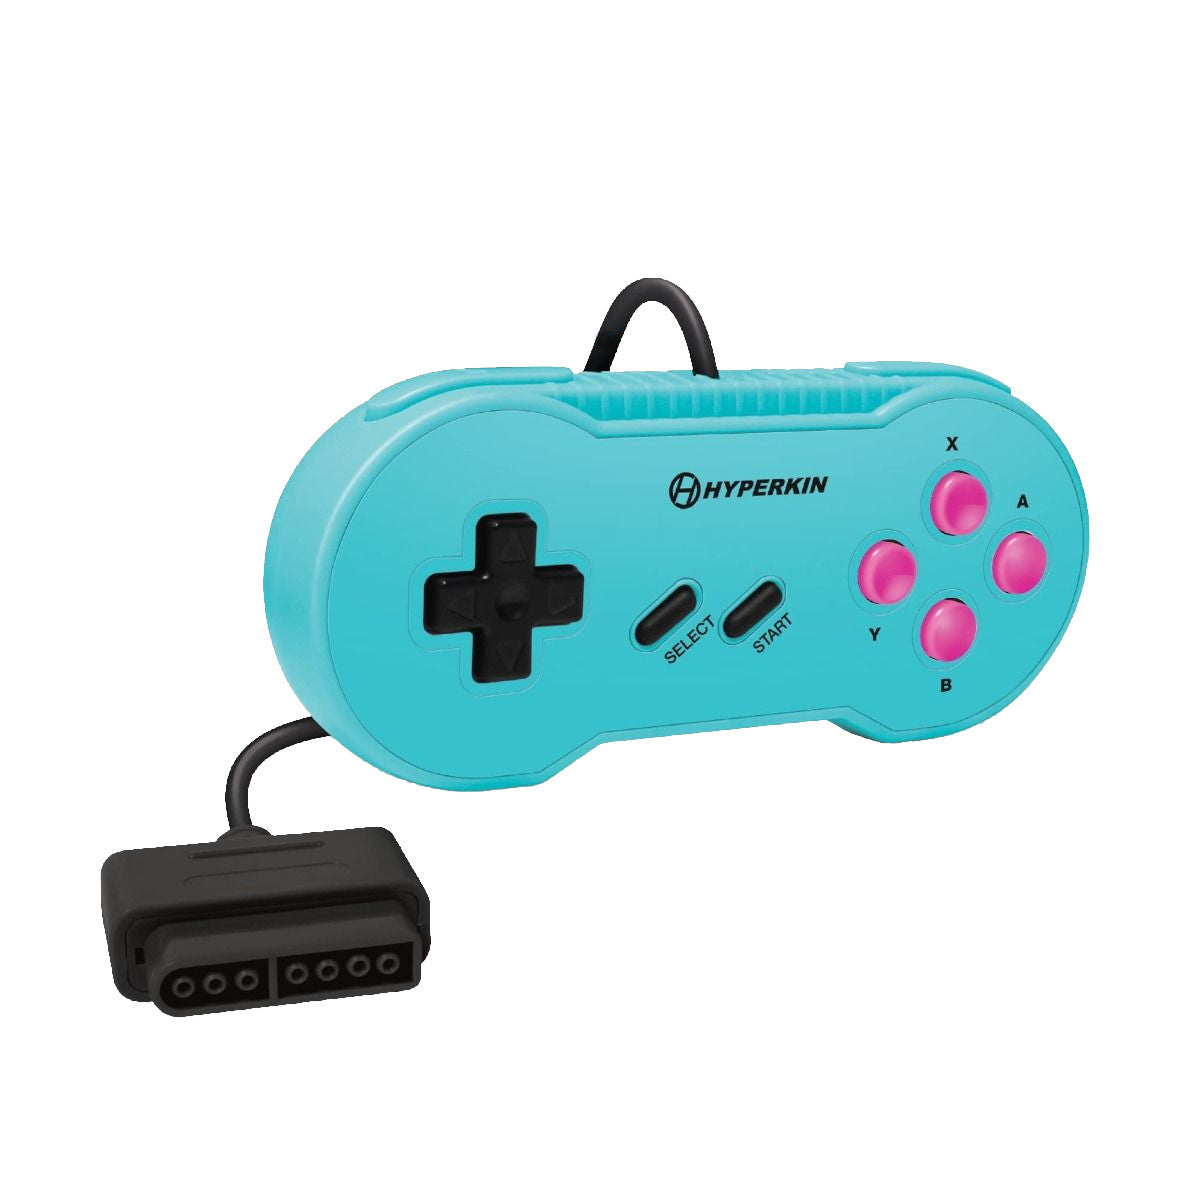 スーパーファミコン コントローラー - Nintendo Switch